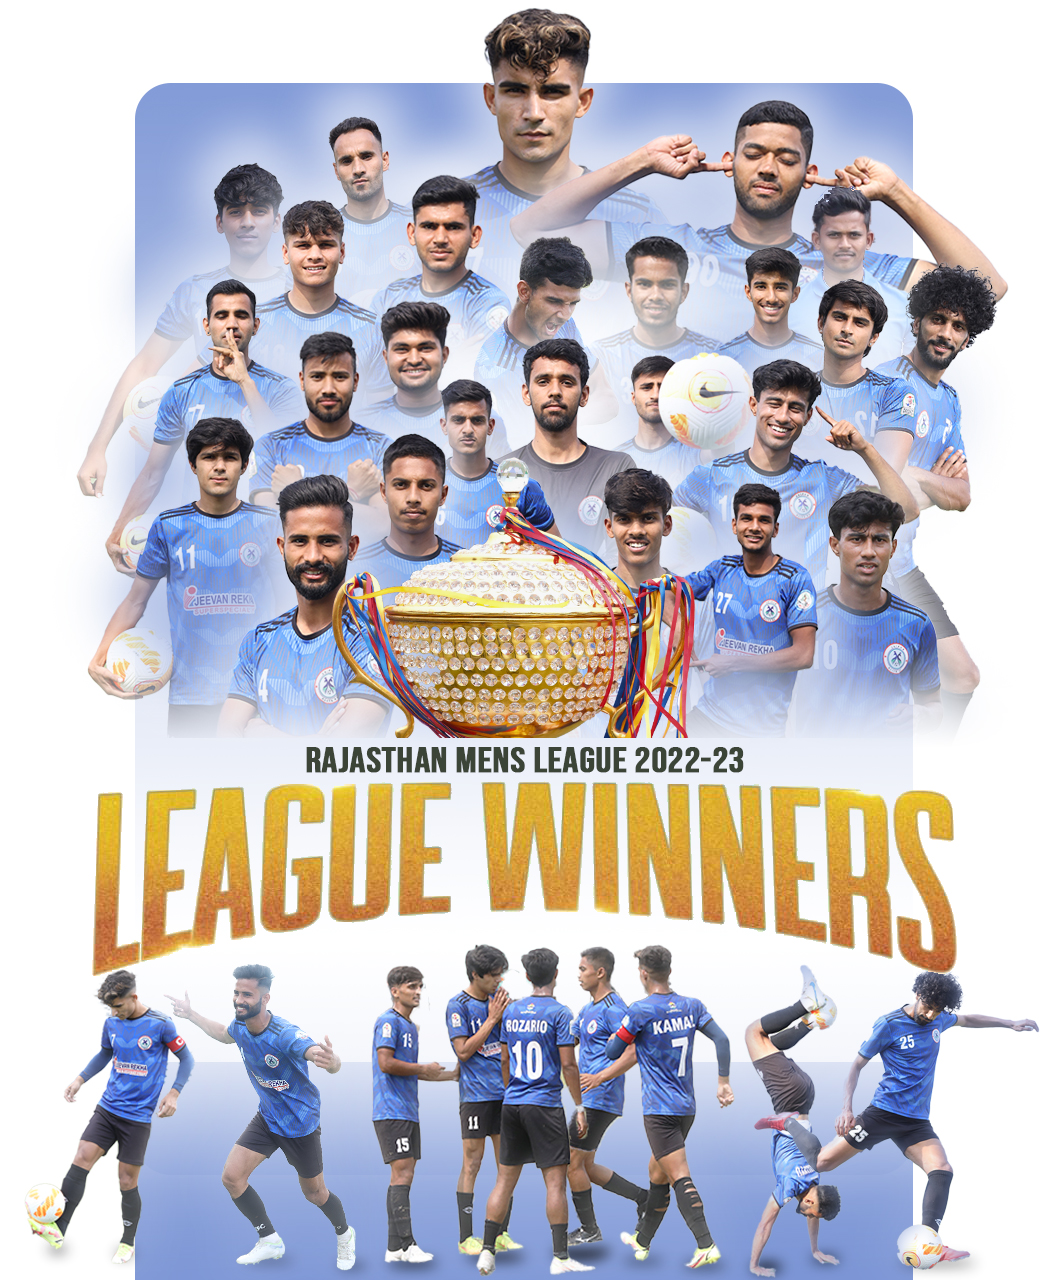 JEFC – Best Football Club In Jaipur